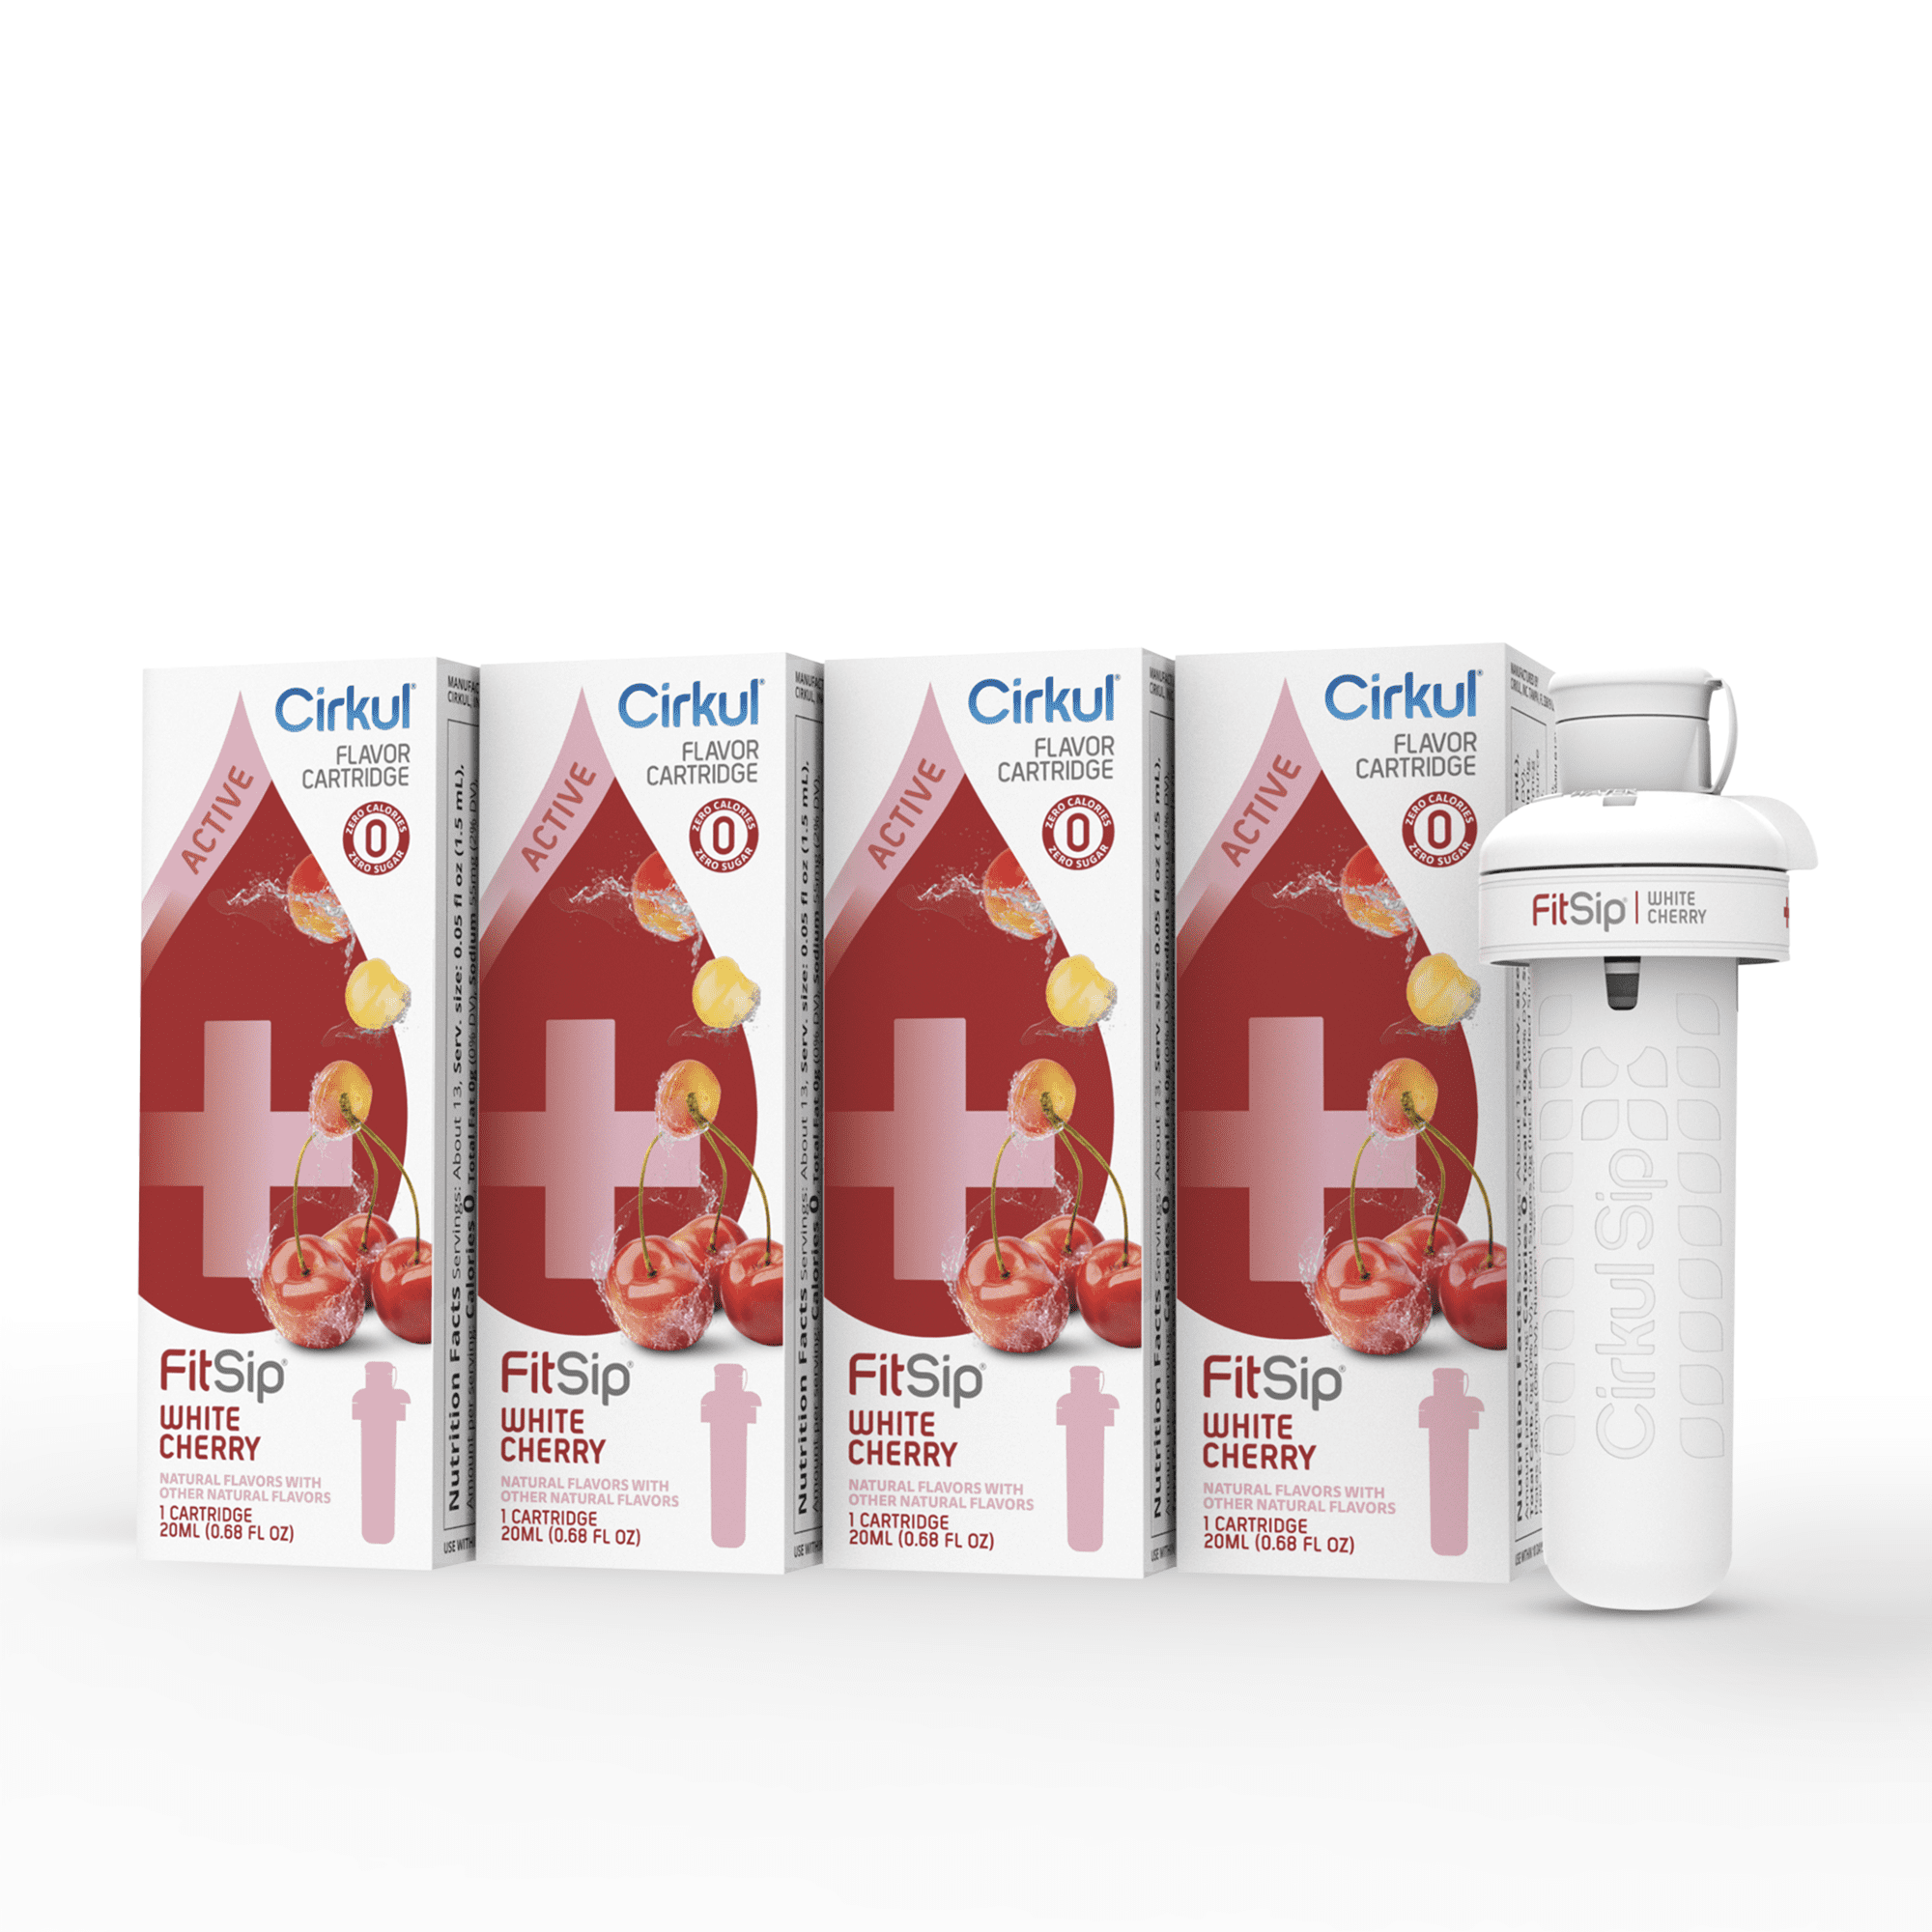 Cirkul® FitSip® 2-Pack Mixed Berry Flavor Cartridges, 2 units - Kroger